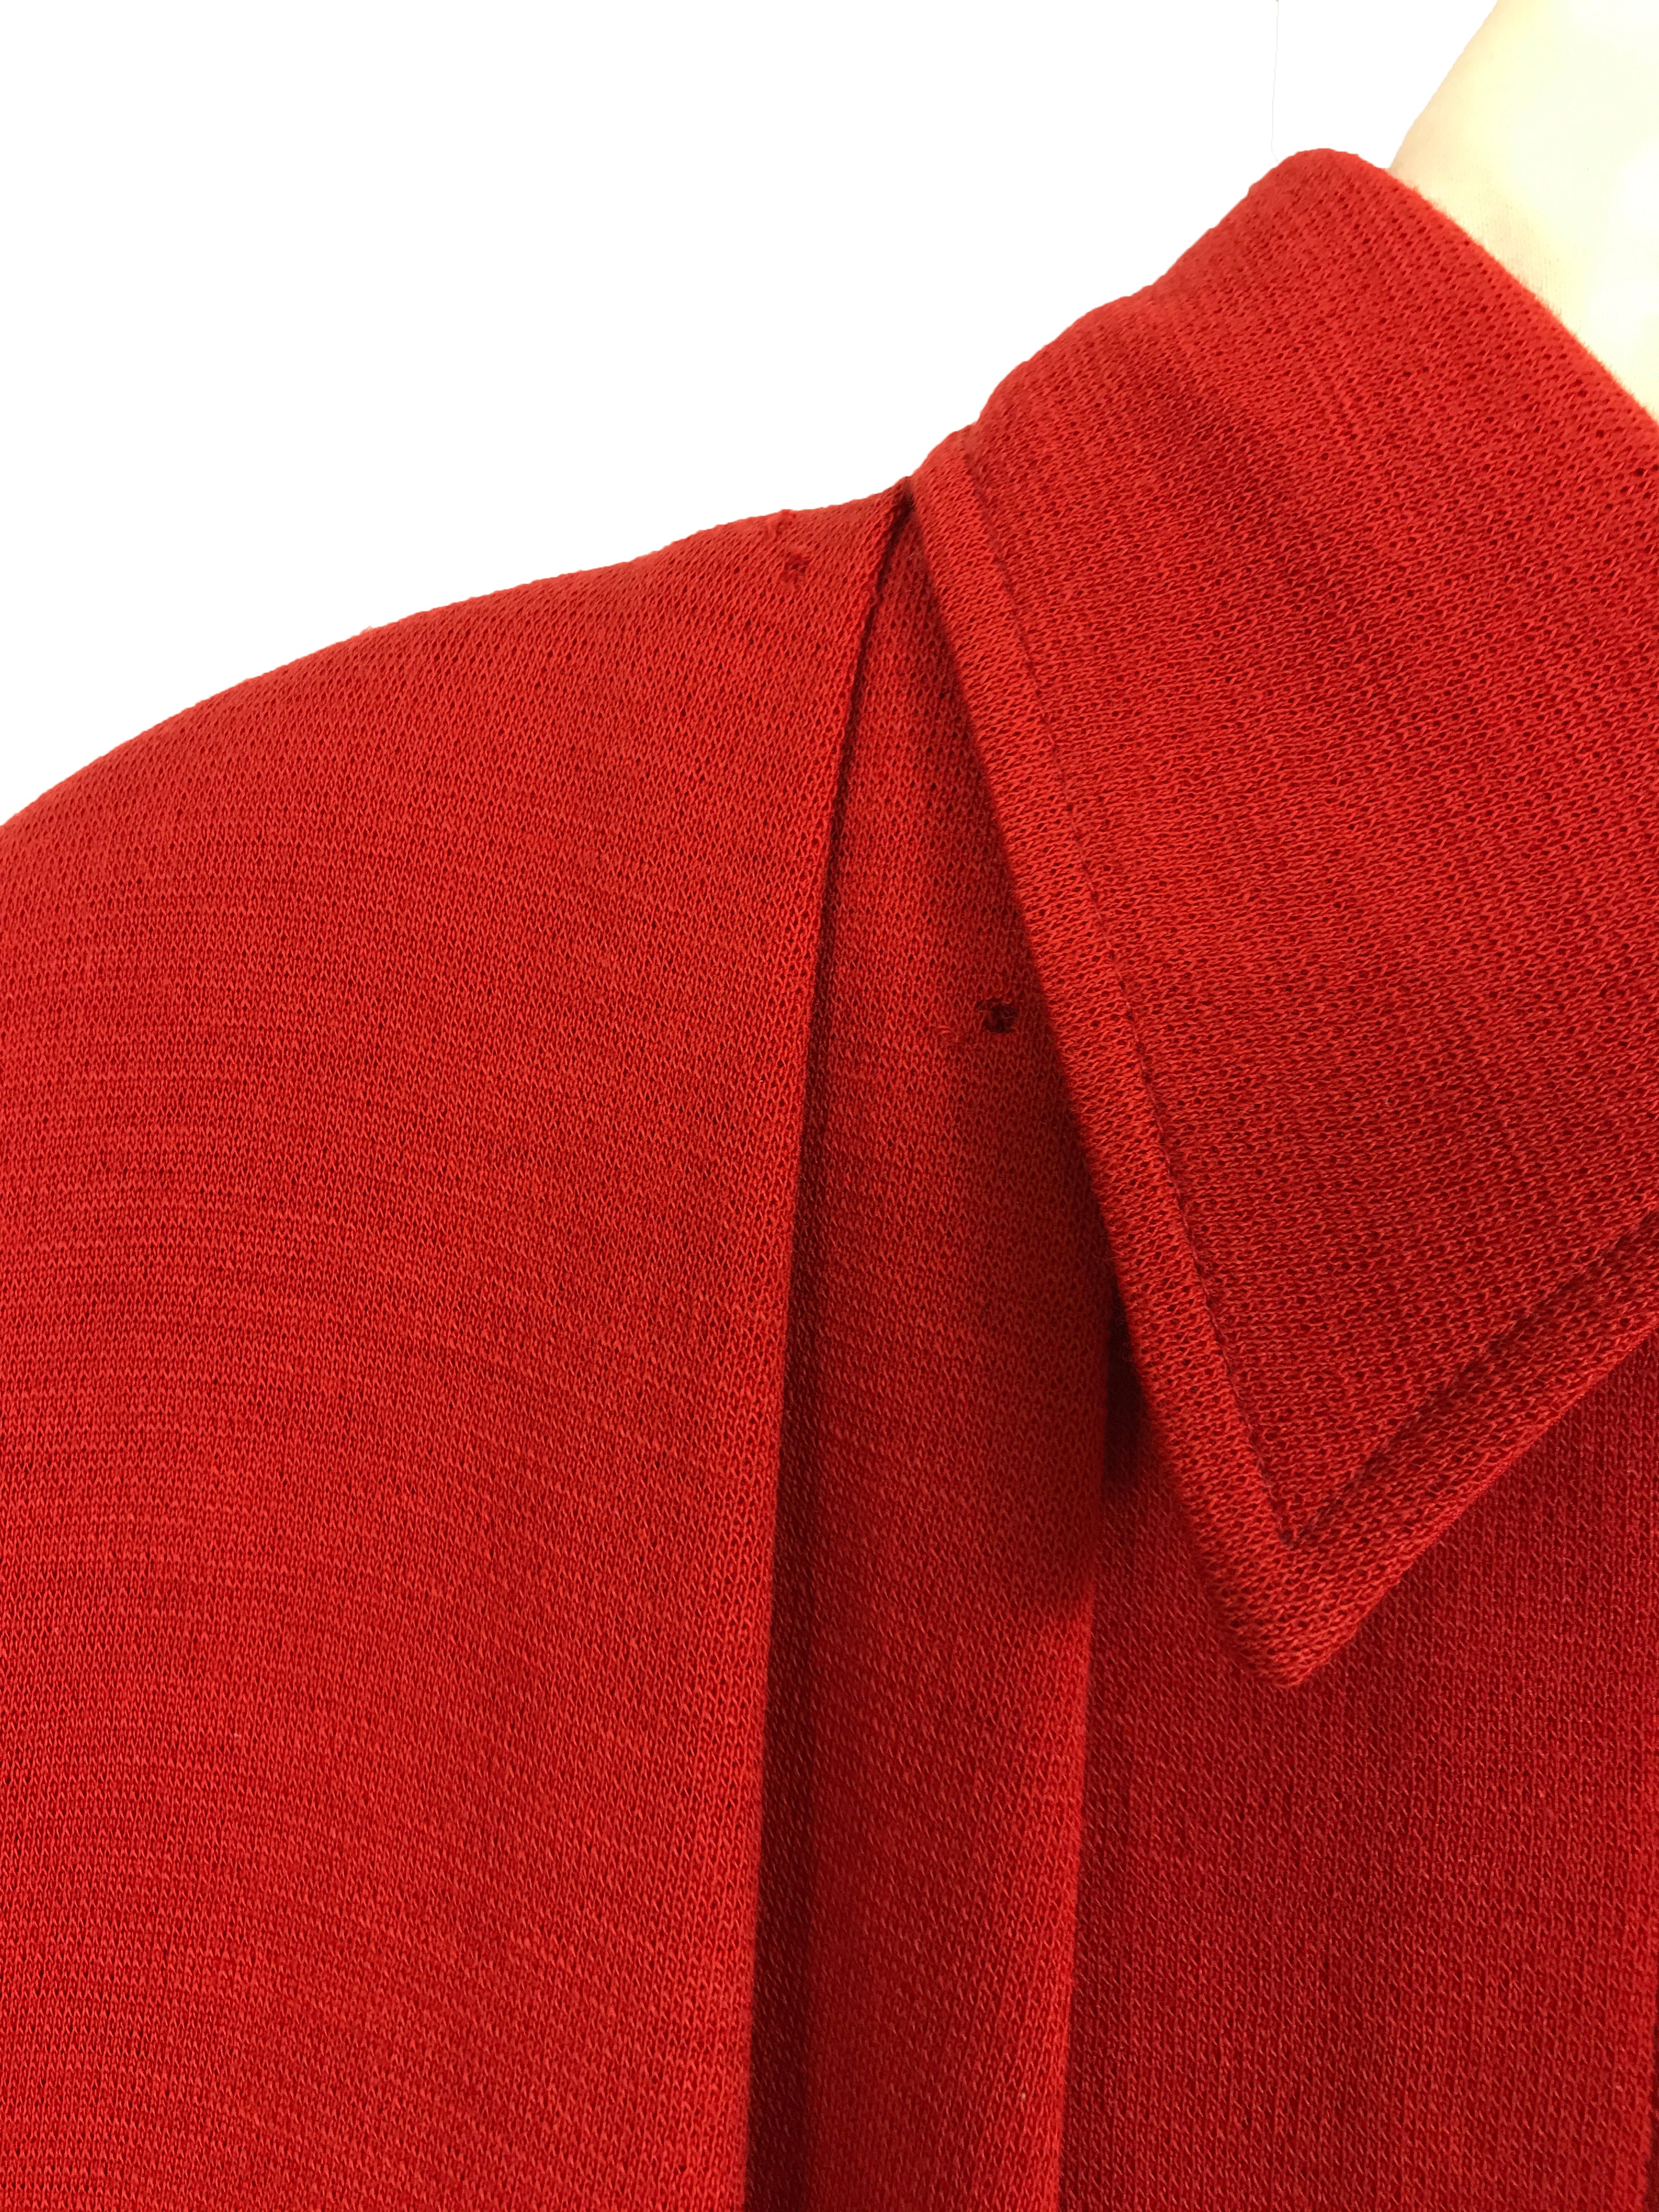 Vintage Studio 0001 Ferre Red Knit Wool Dress